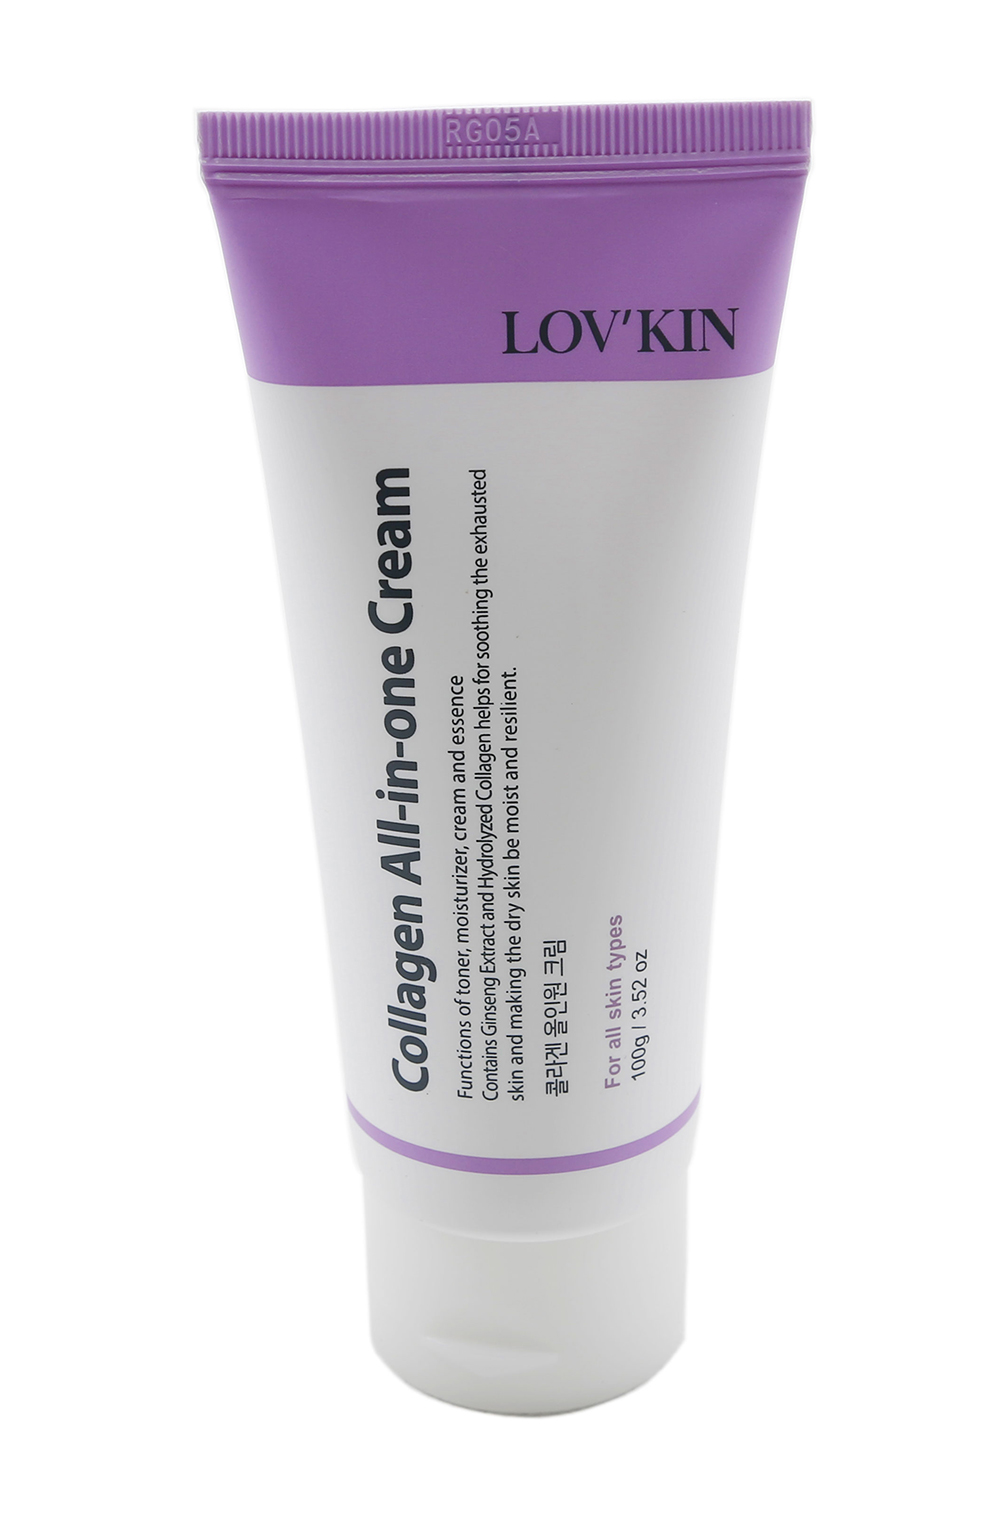 kem dưỡng collagen hỗn hợp lov kin collagen all-in-one cream chống lão hóa, giữ ẩm, tạo độ đàn hồi cho da - 100g 2